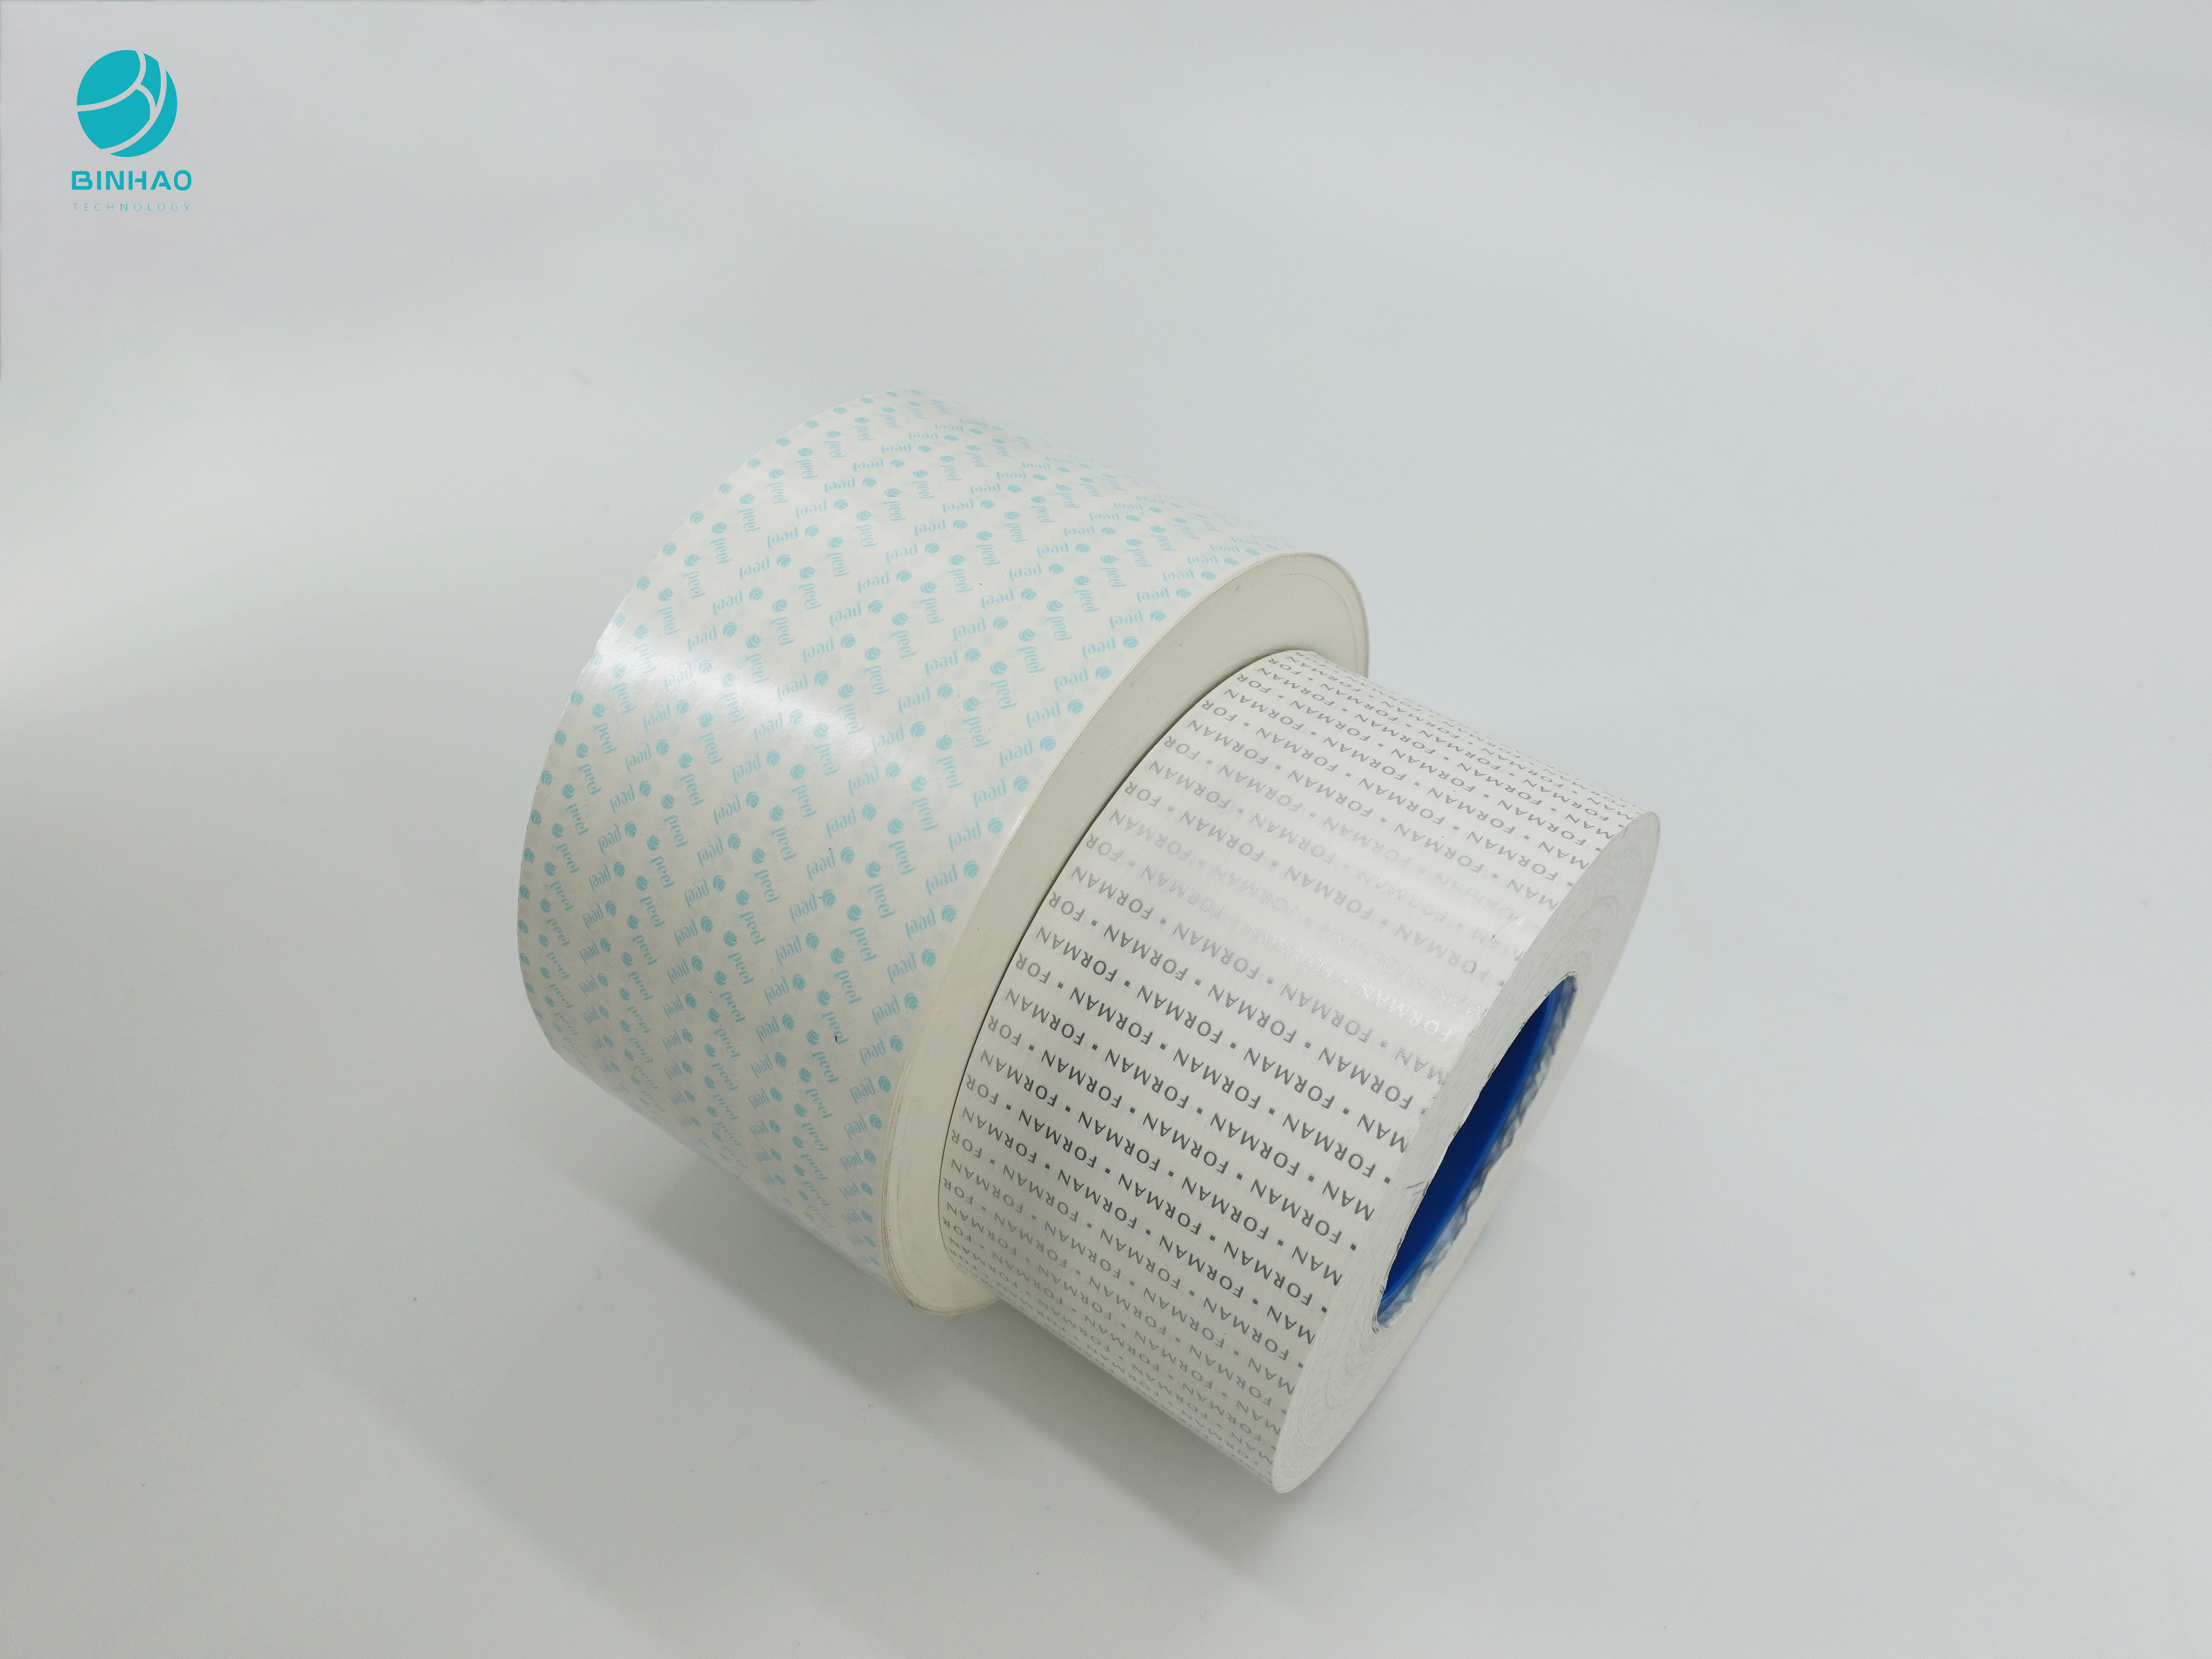 Eco Friendly White No Aluminum Inner Liner Foil Paper For Cigarette Packaging